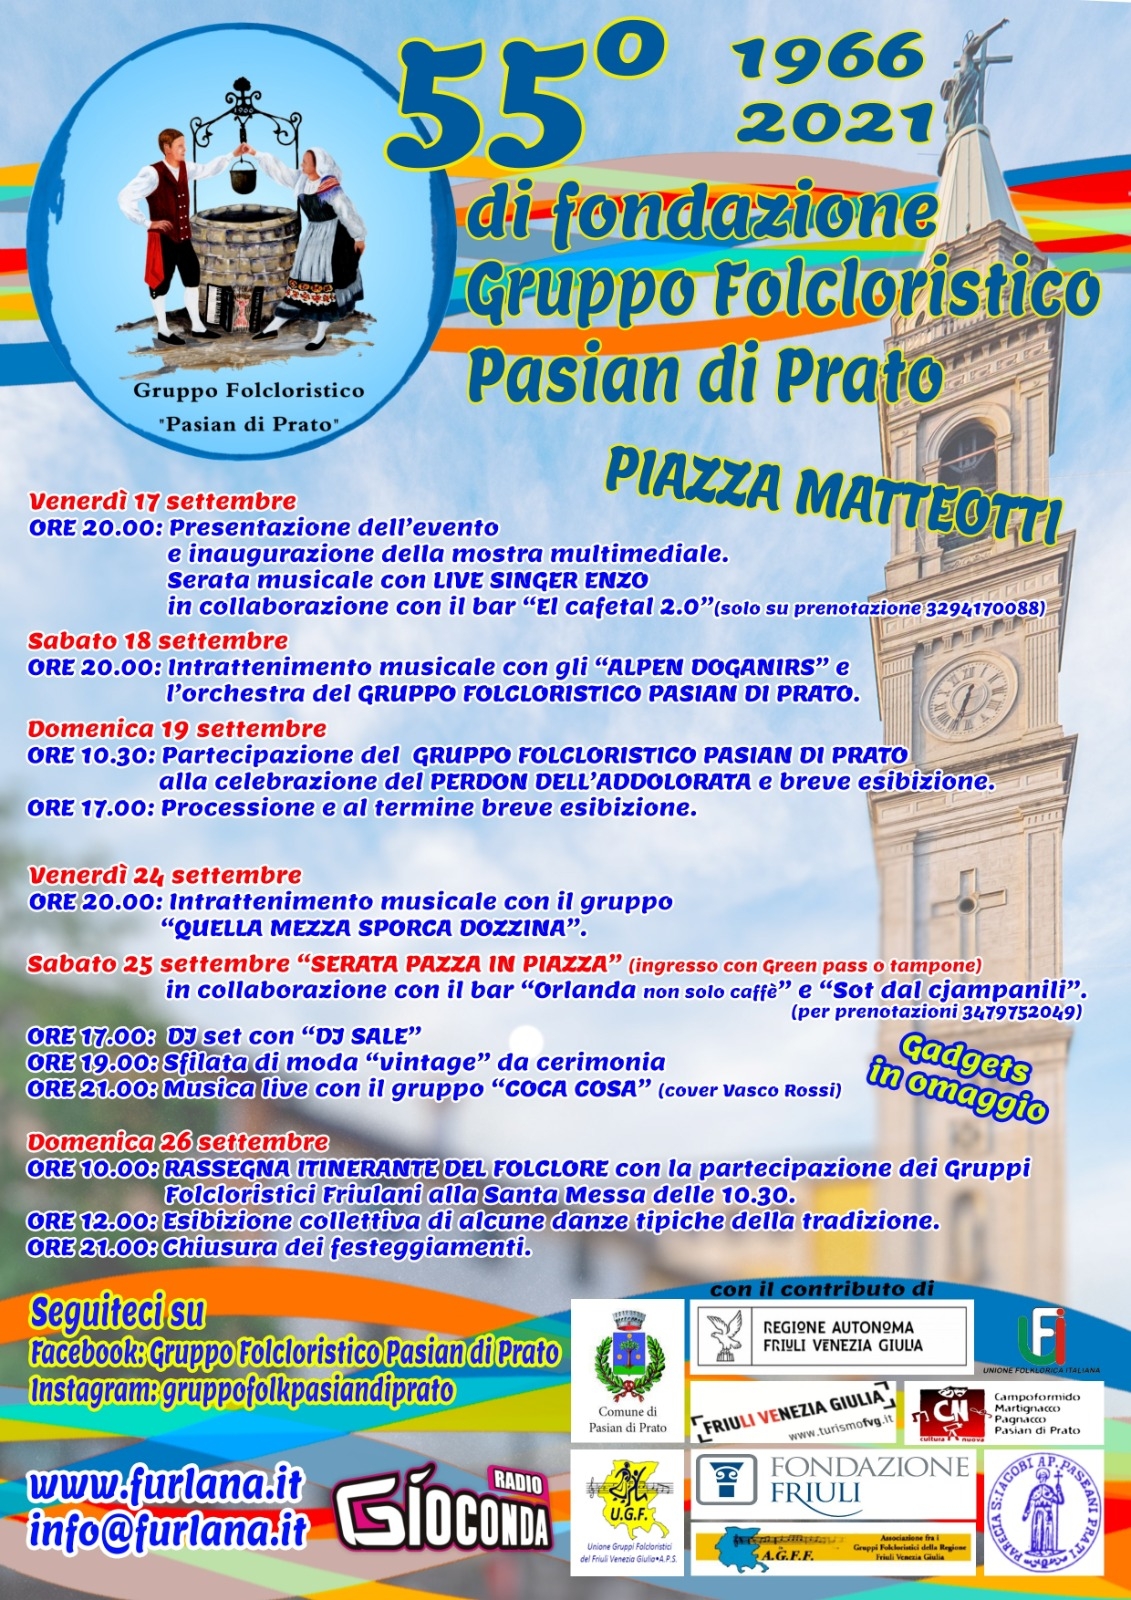 55° di fondazione Gruppo Folcloristico Pasian di Prato - EventiFVG.it